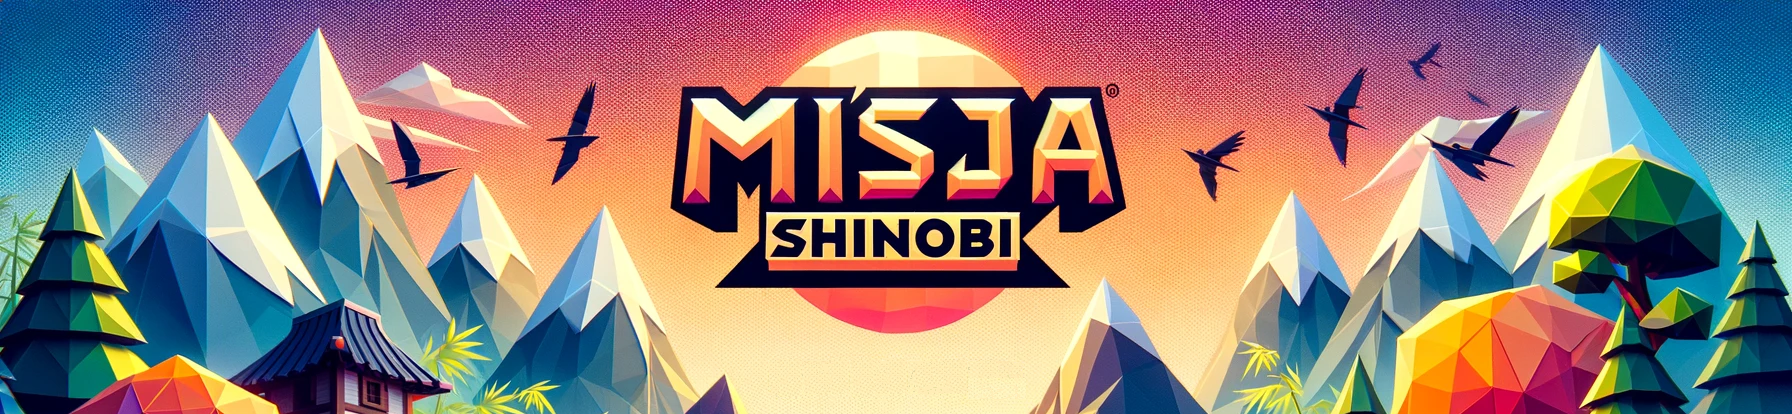 Misja Shinobi